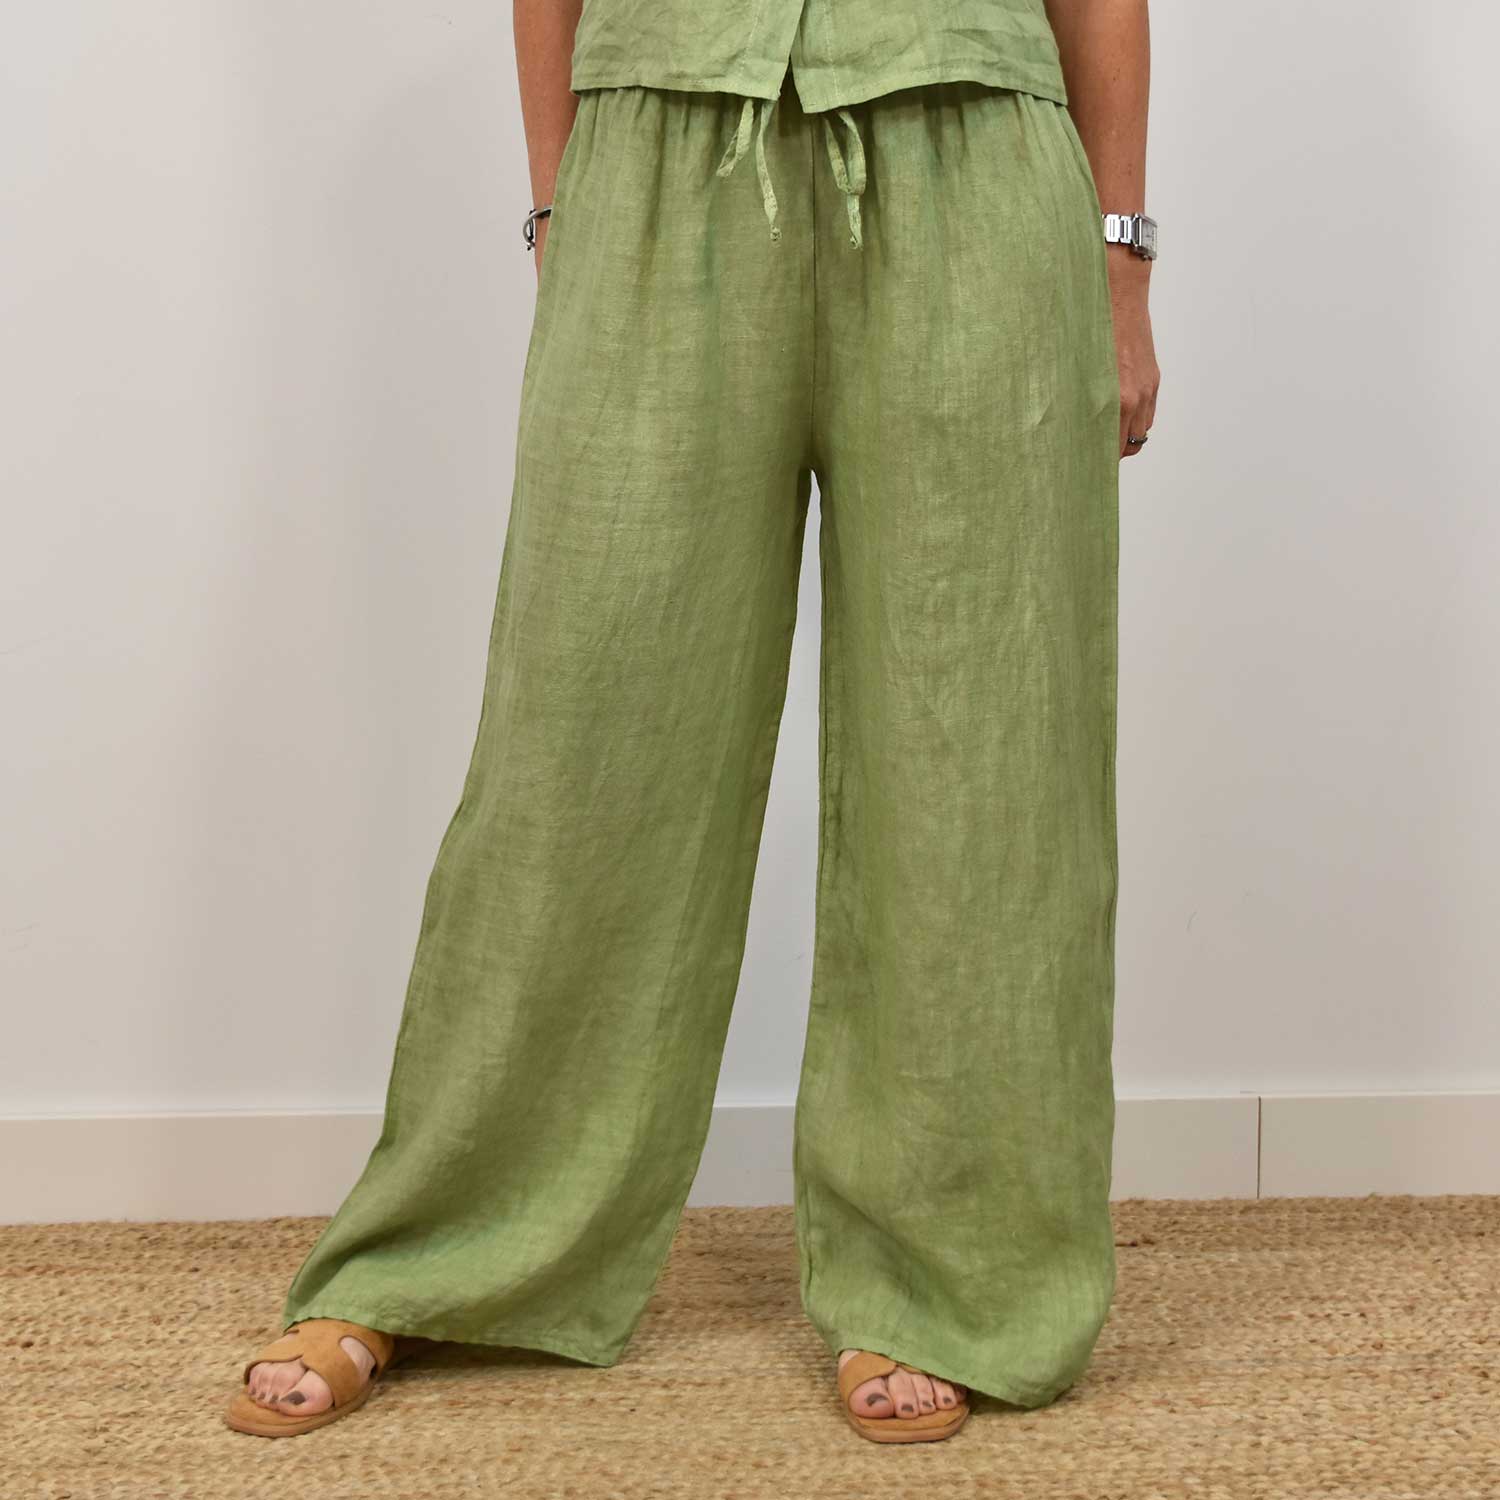 Pantalon droit en lin vert